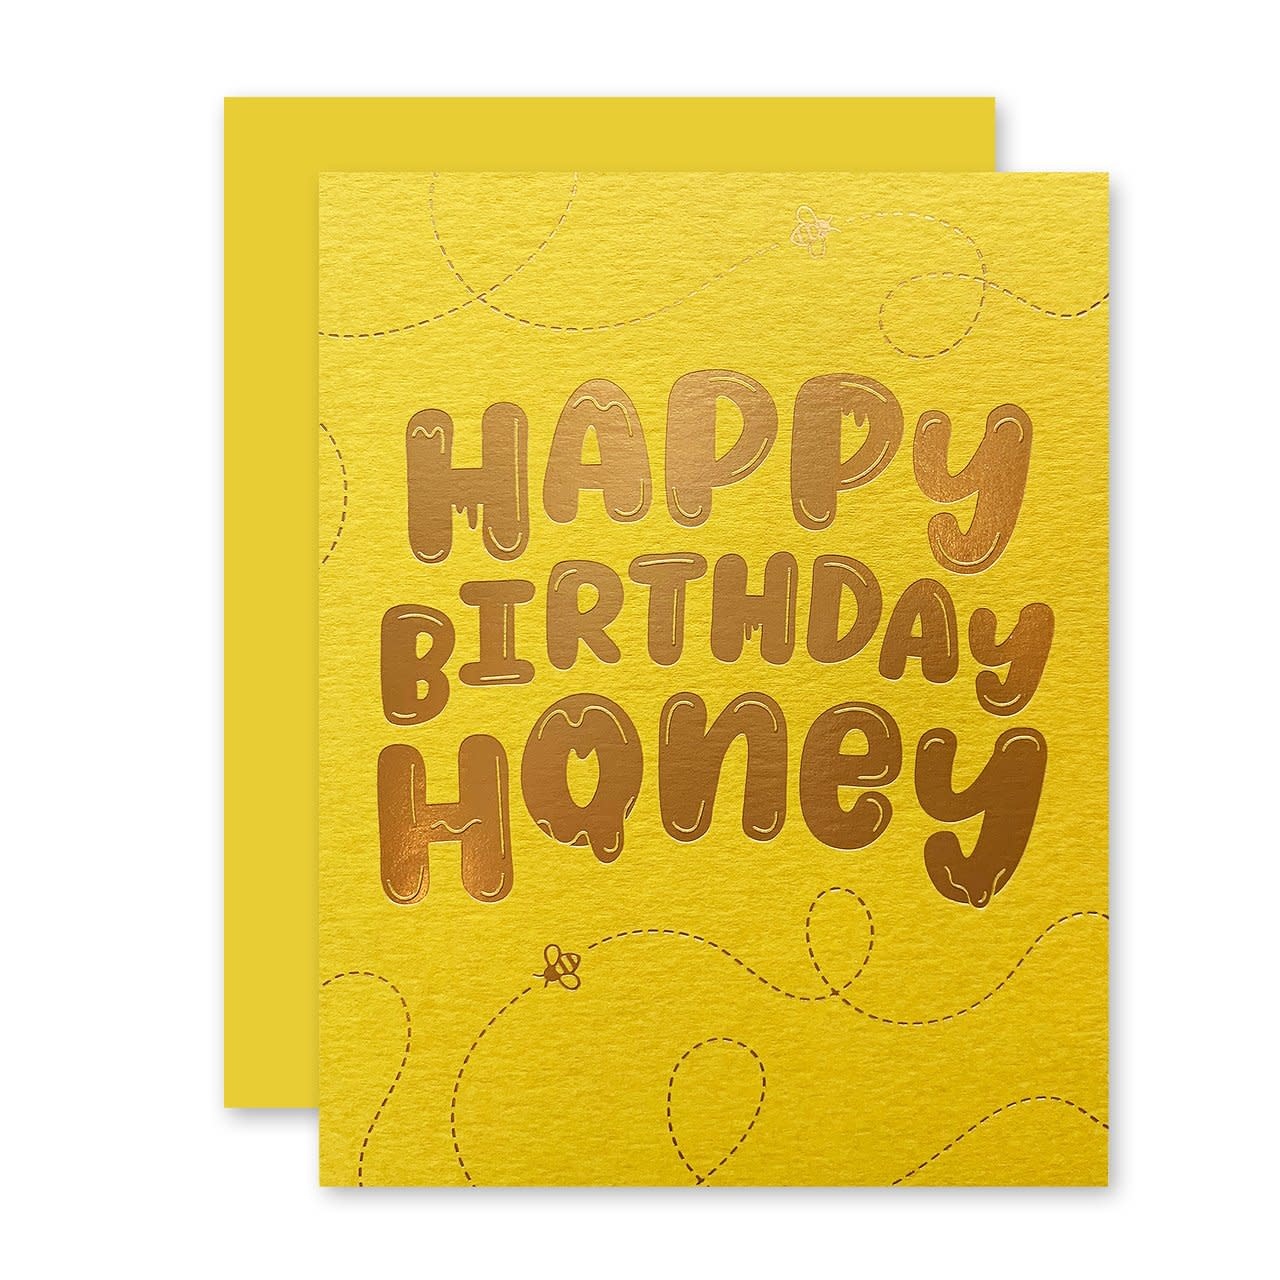 TSTGCBI0047 - Happy Birthday Honey - Gus and Ruby Letterpress